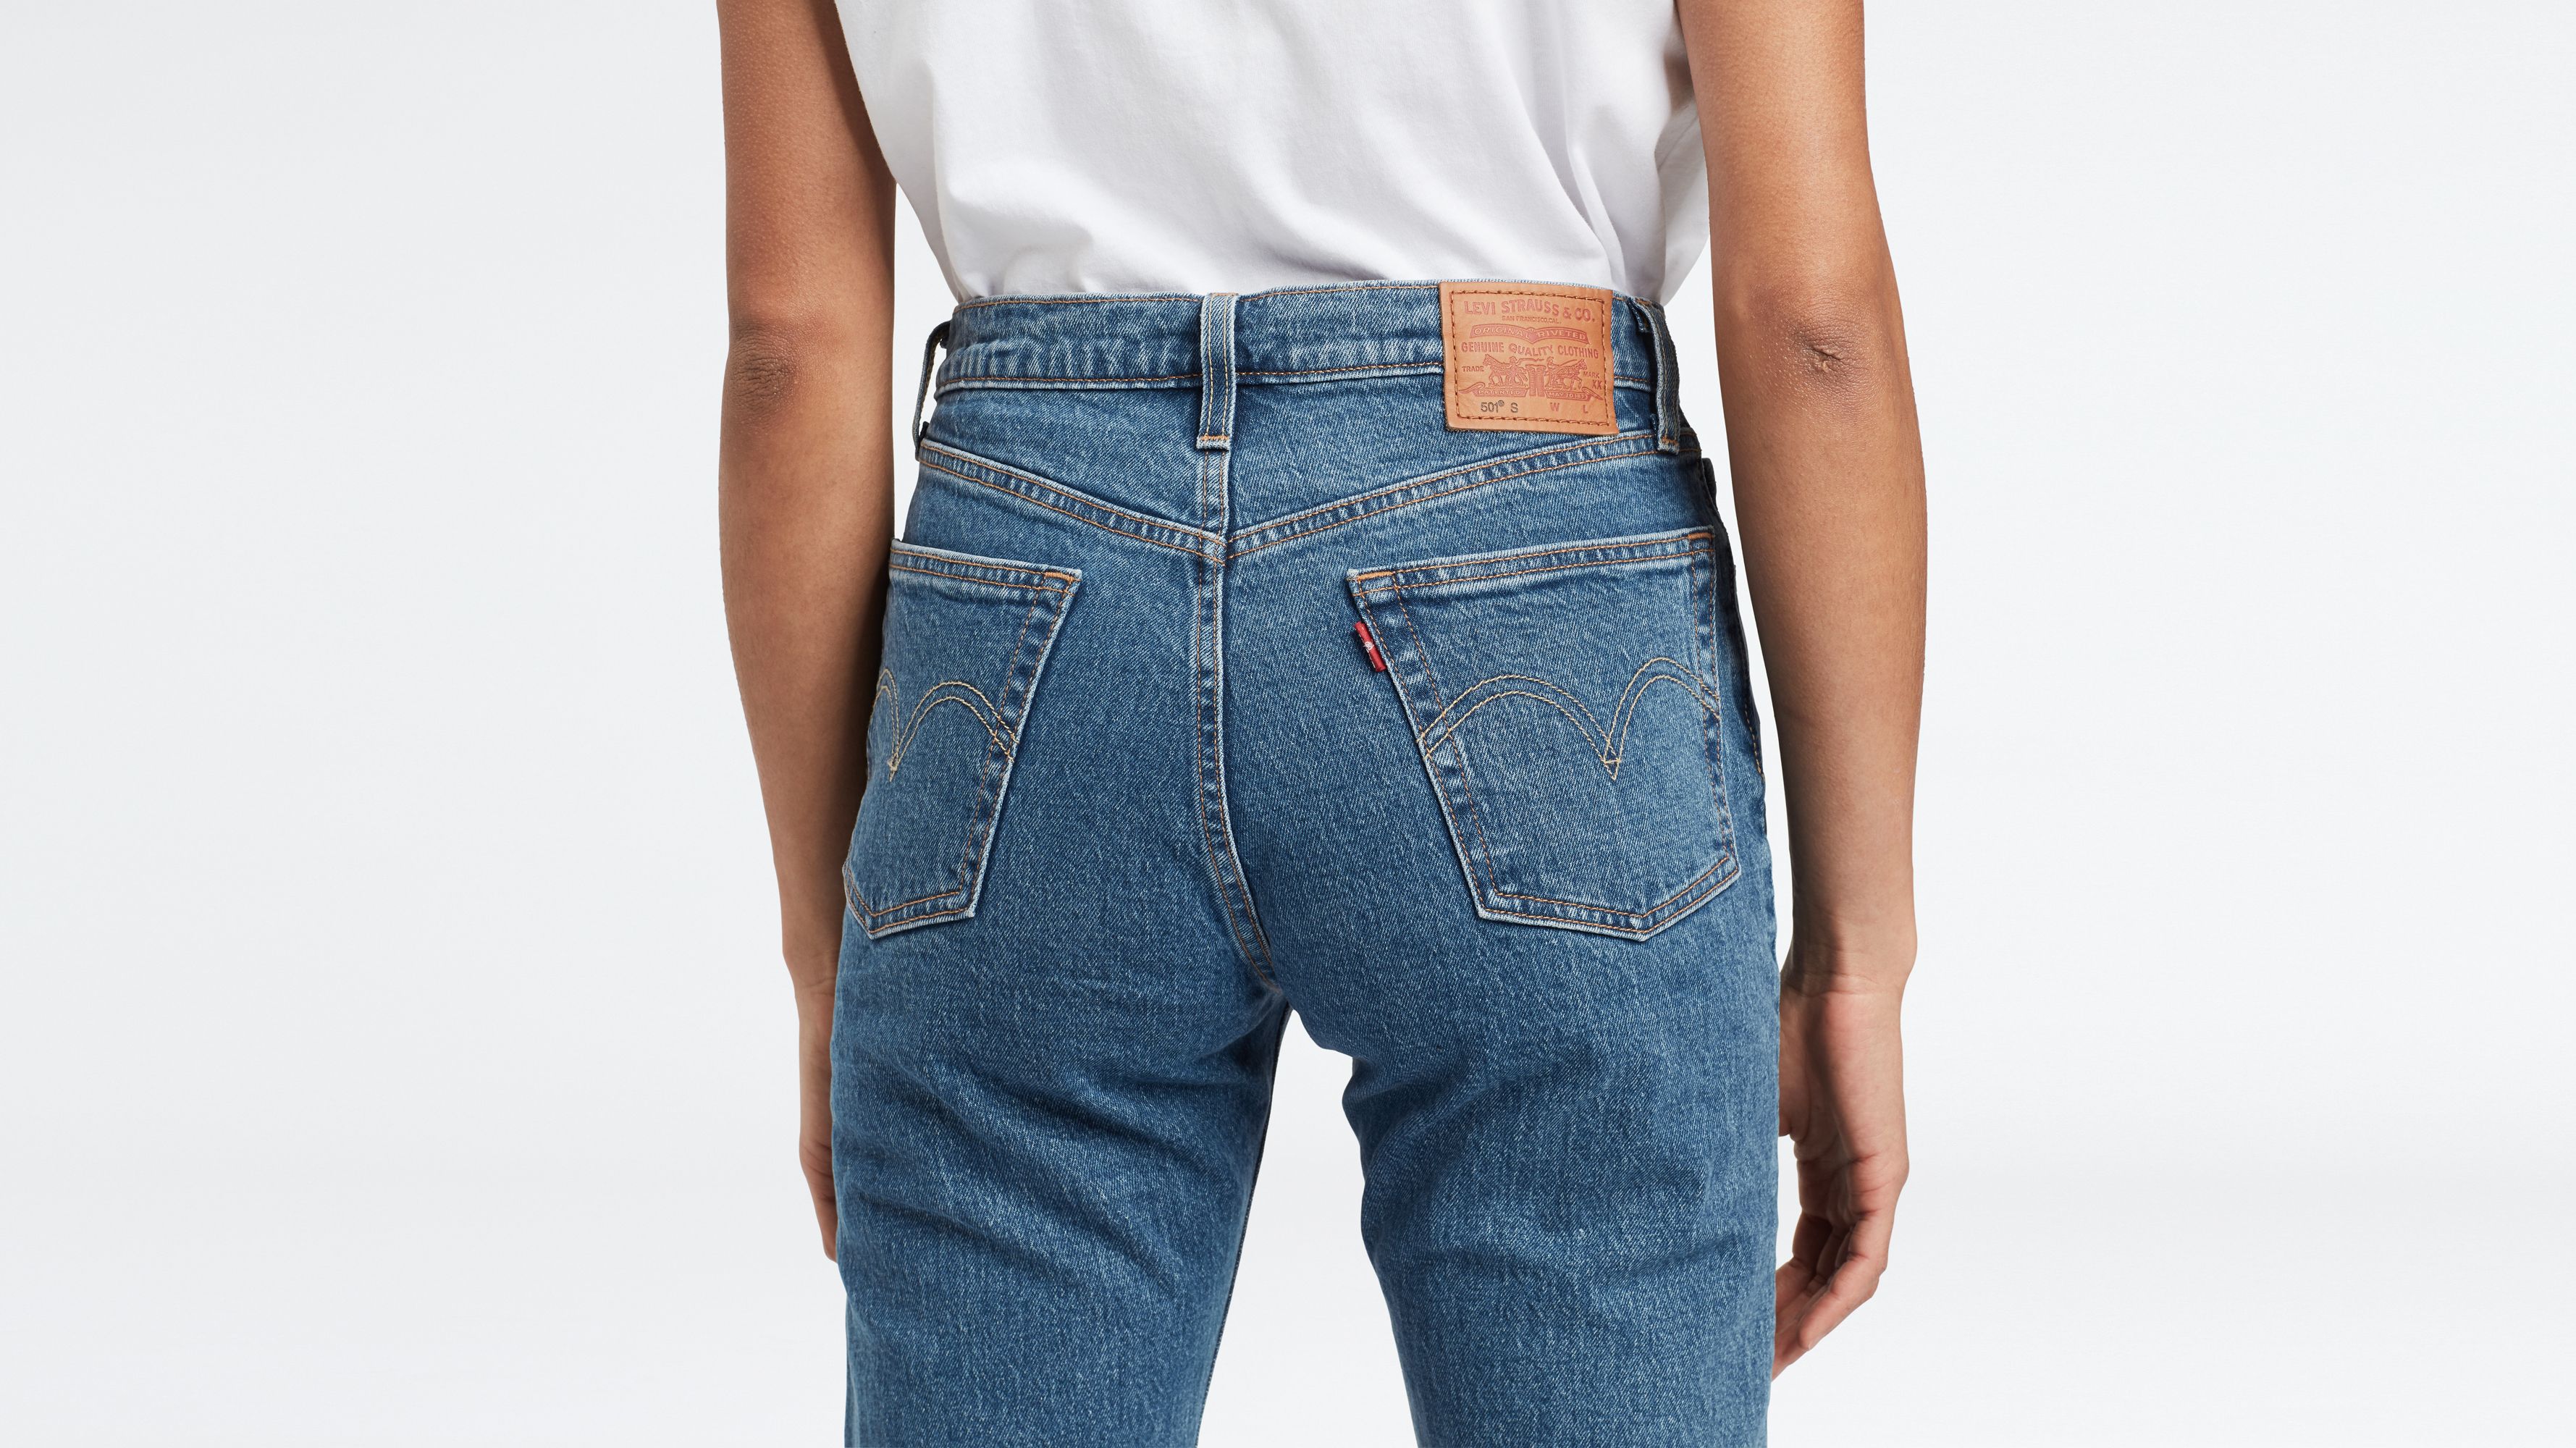 levis crop jeans 501